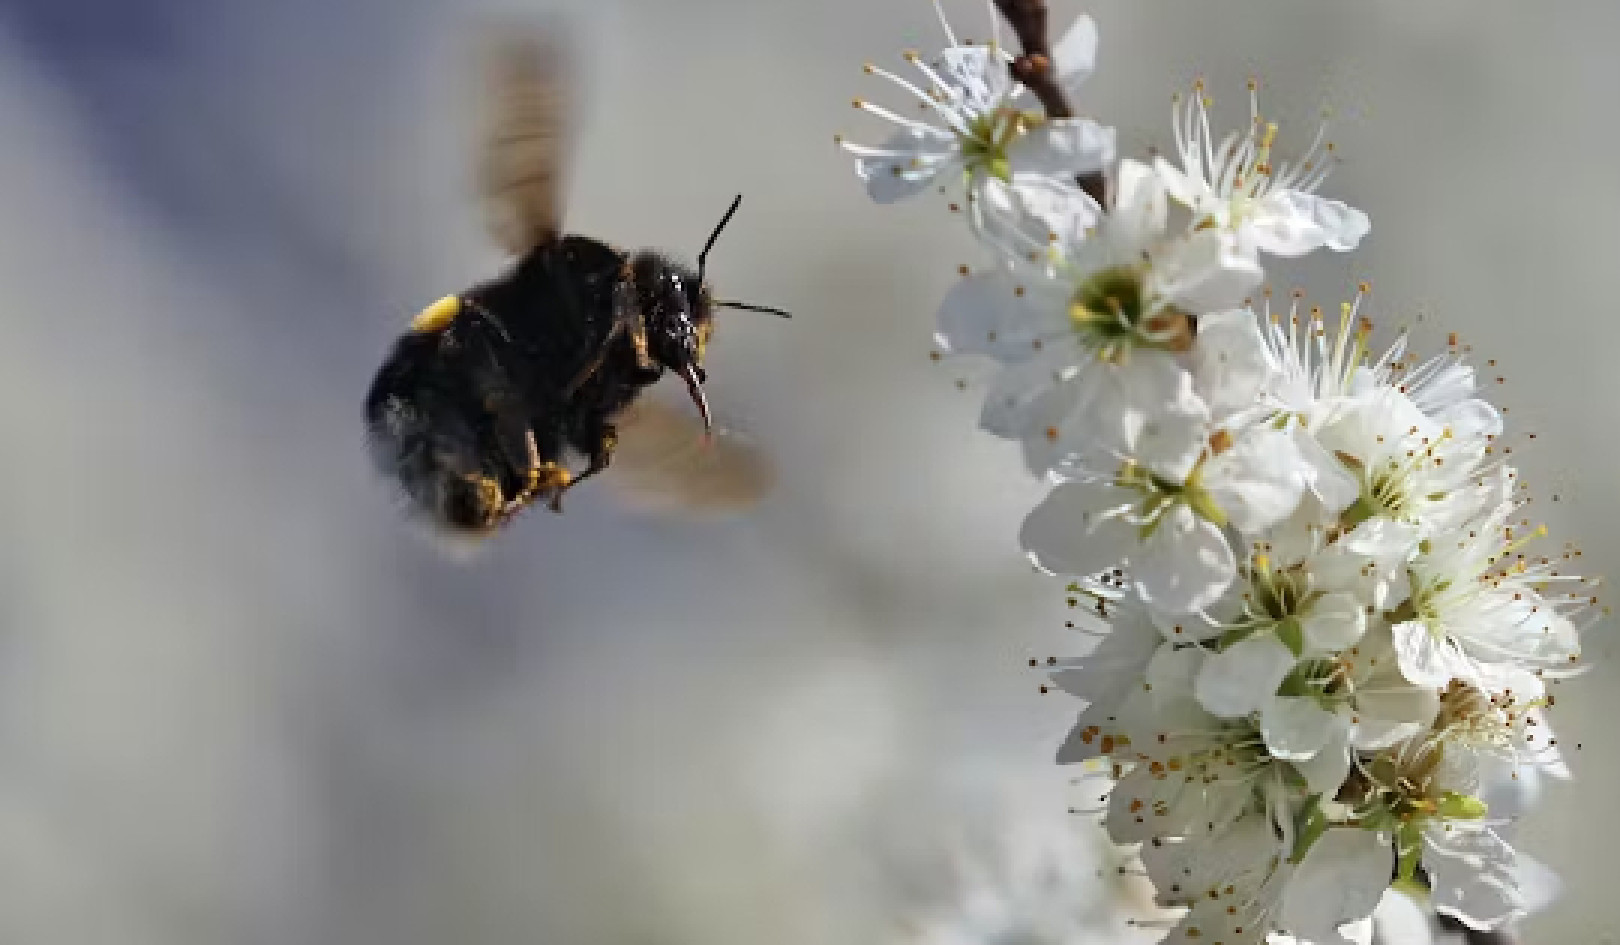 De geheimen van bijen ontsluiten: hoe ze waarnemen, navigeren en gedijen